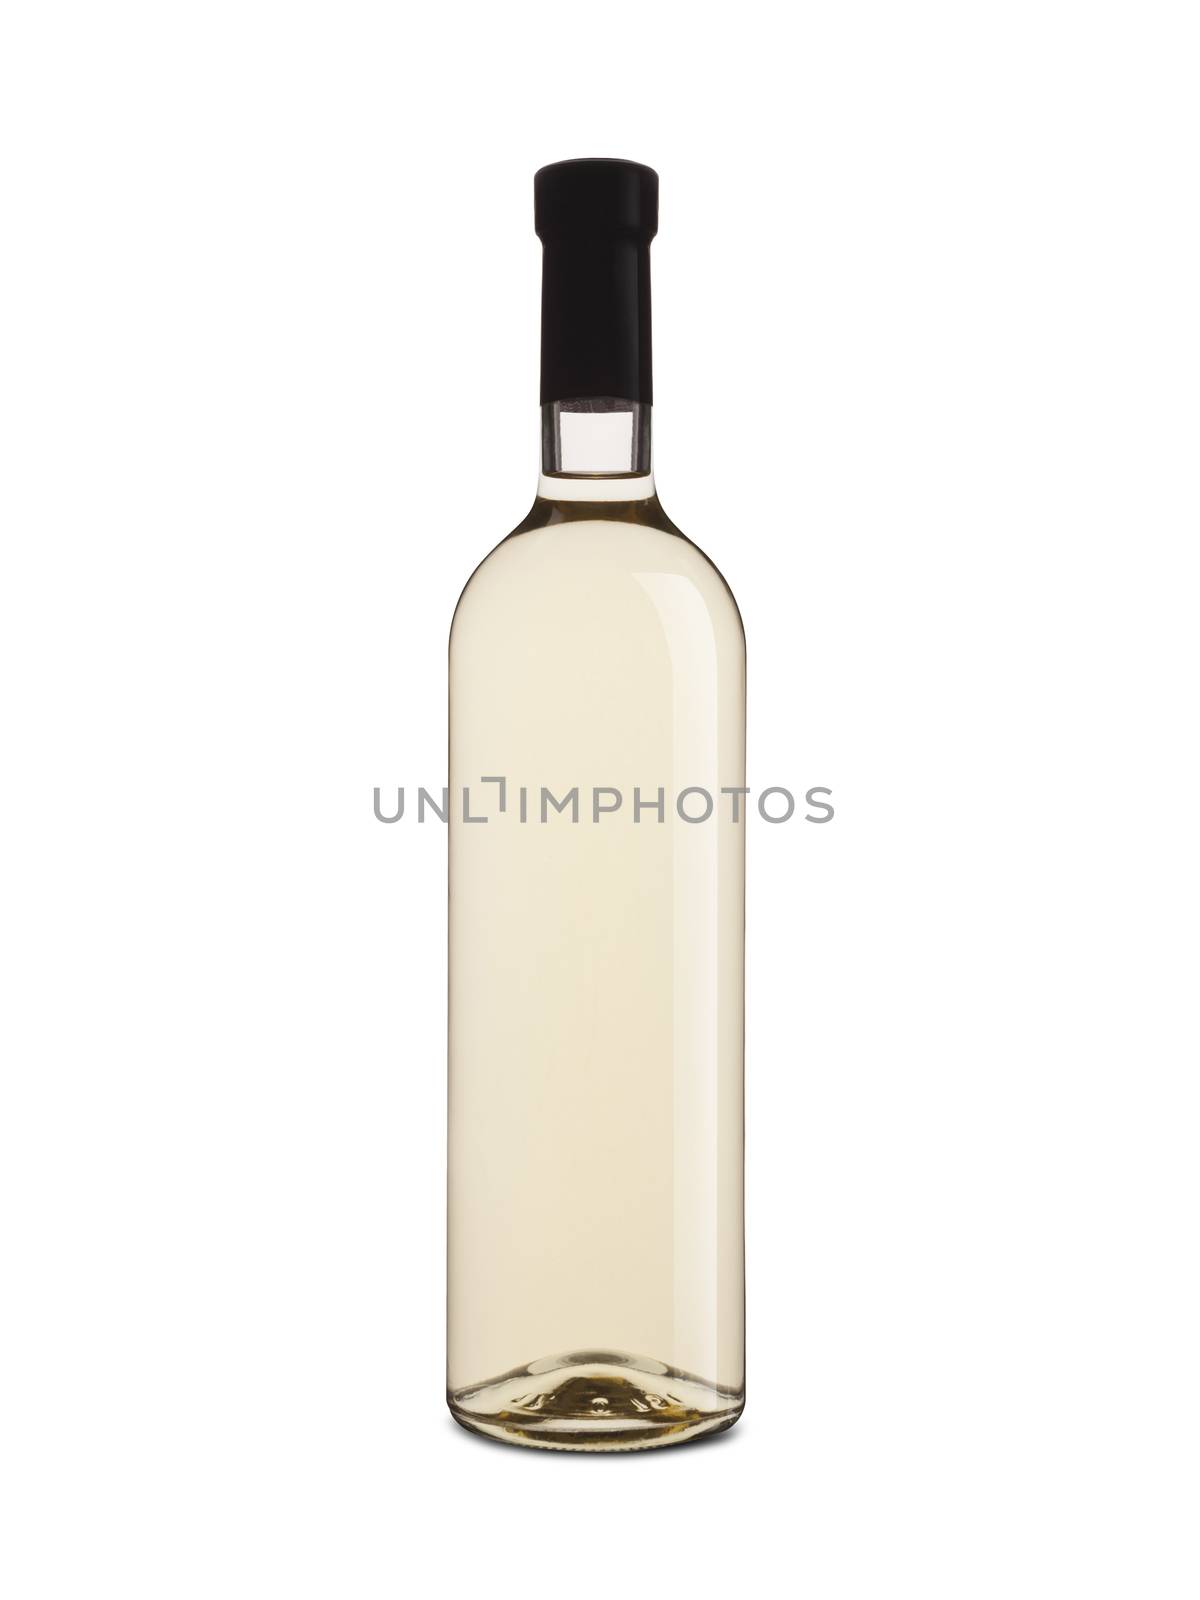 white wine bottle isolated on white background by SlayCer